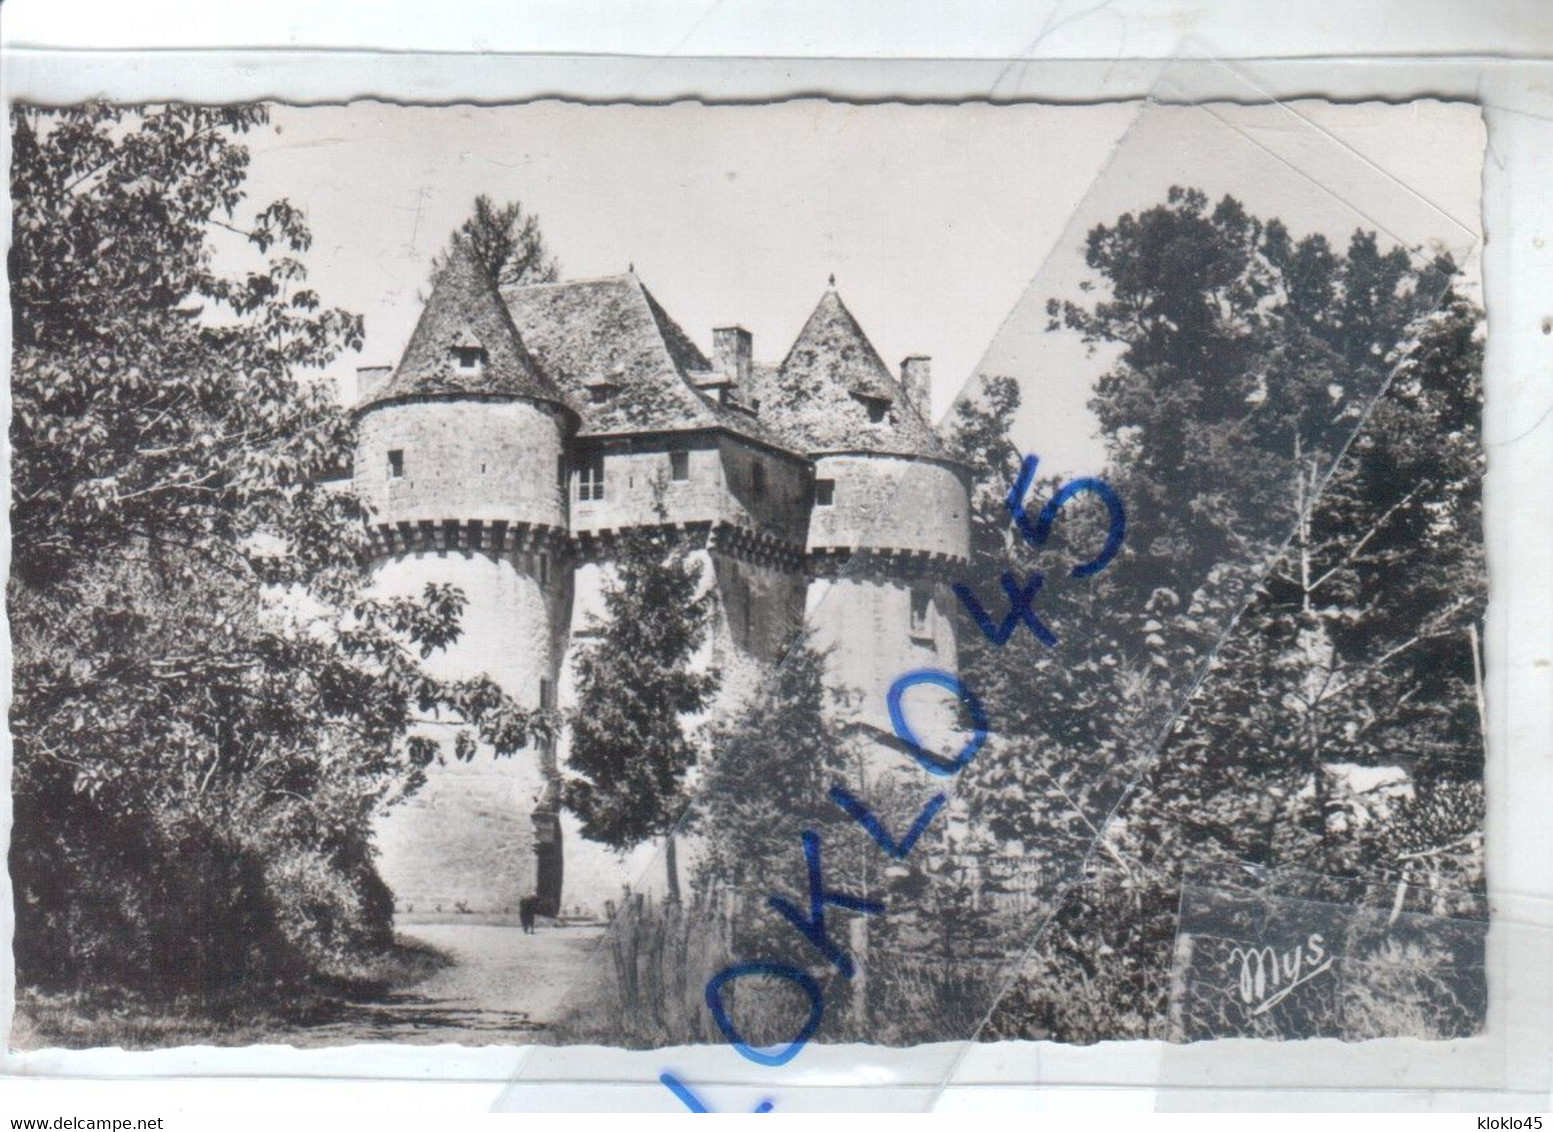 46 SOUSCEYRAC ( Lot ) - Château De Grugnac - Vue Prise En été à Travers Les Arbres - CPSM MYS VALENCE D'AGEN N° 2 - Sousceyrac